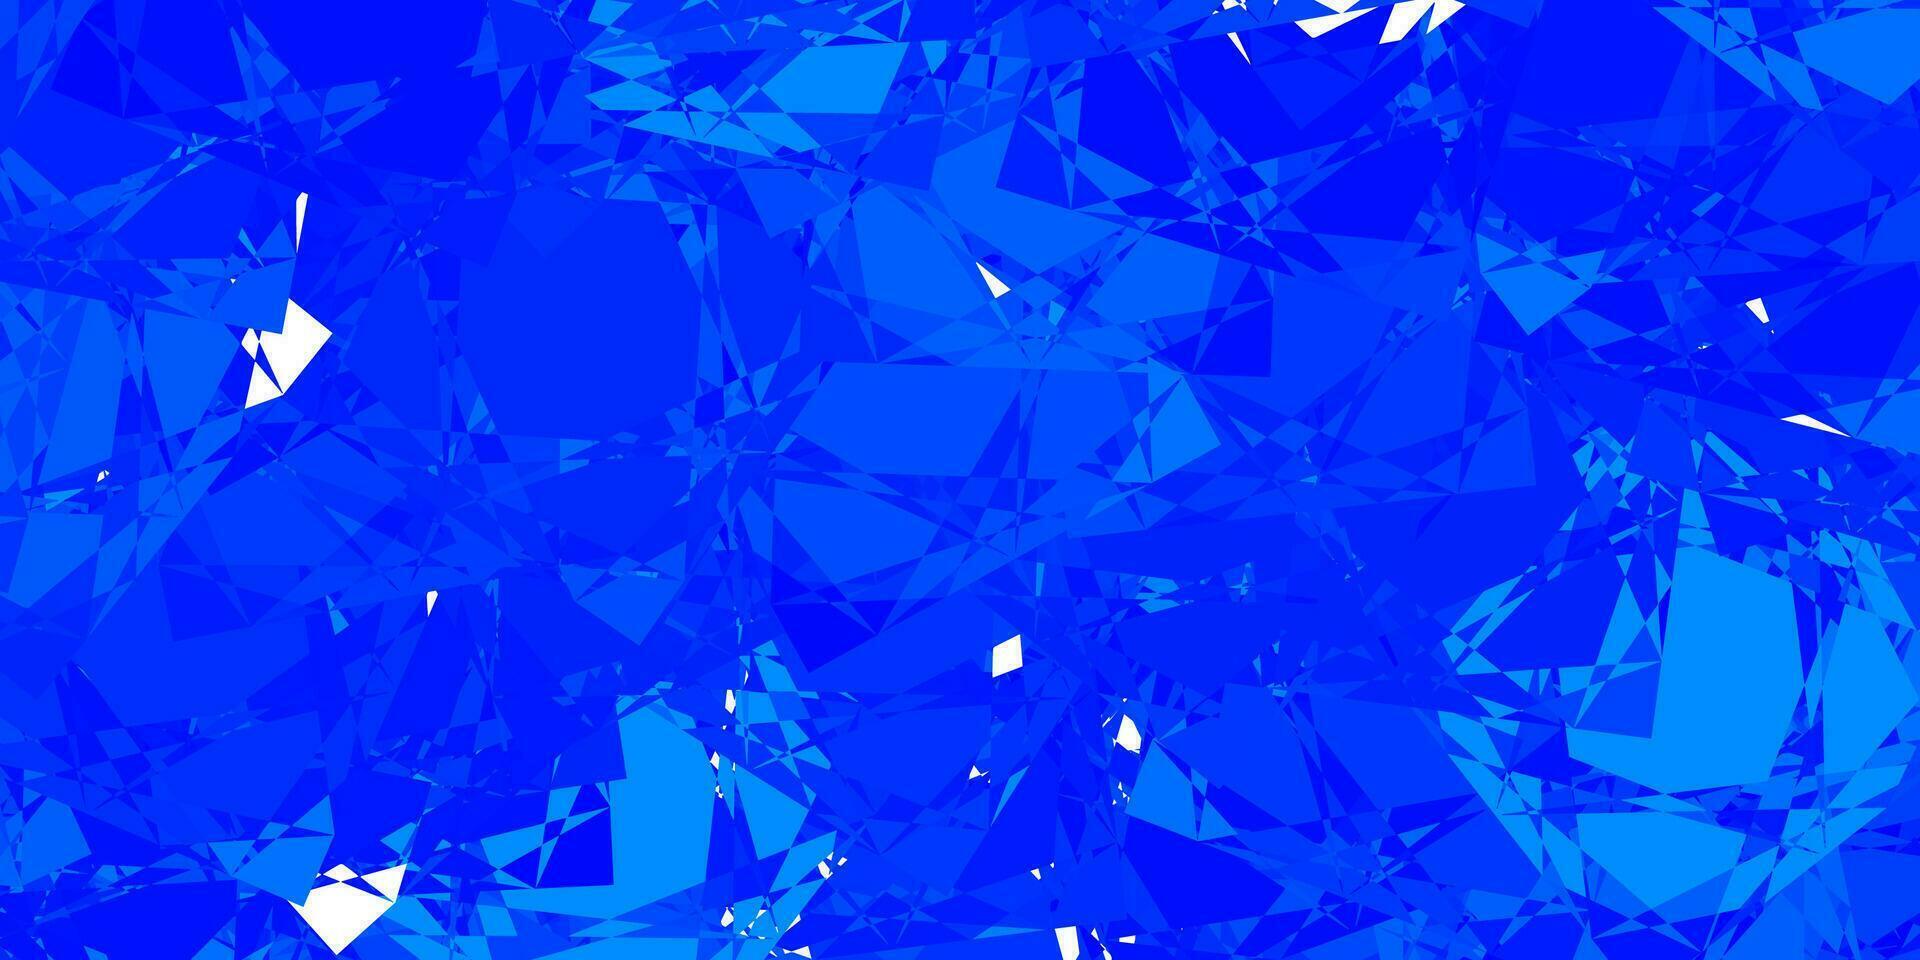 pano de fundo azul claro do vetor com triângulos, linhas.